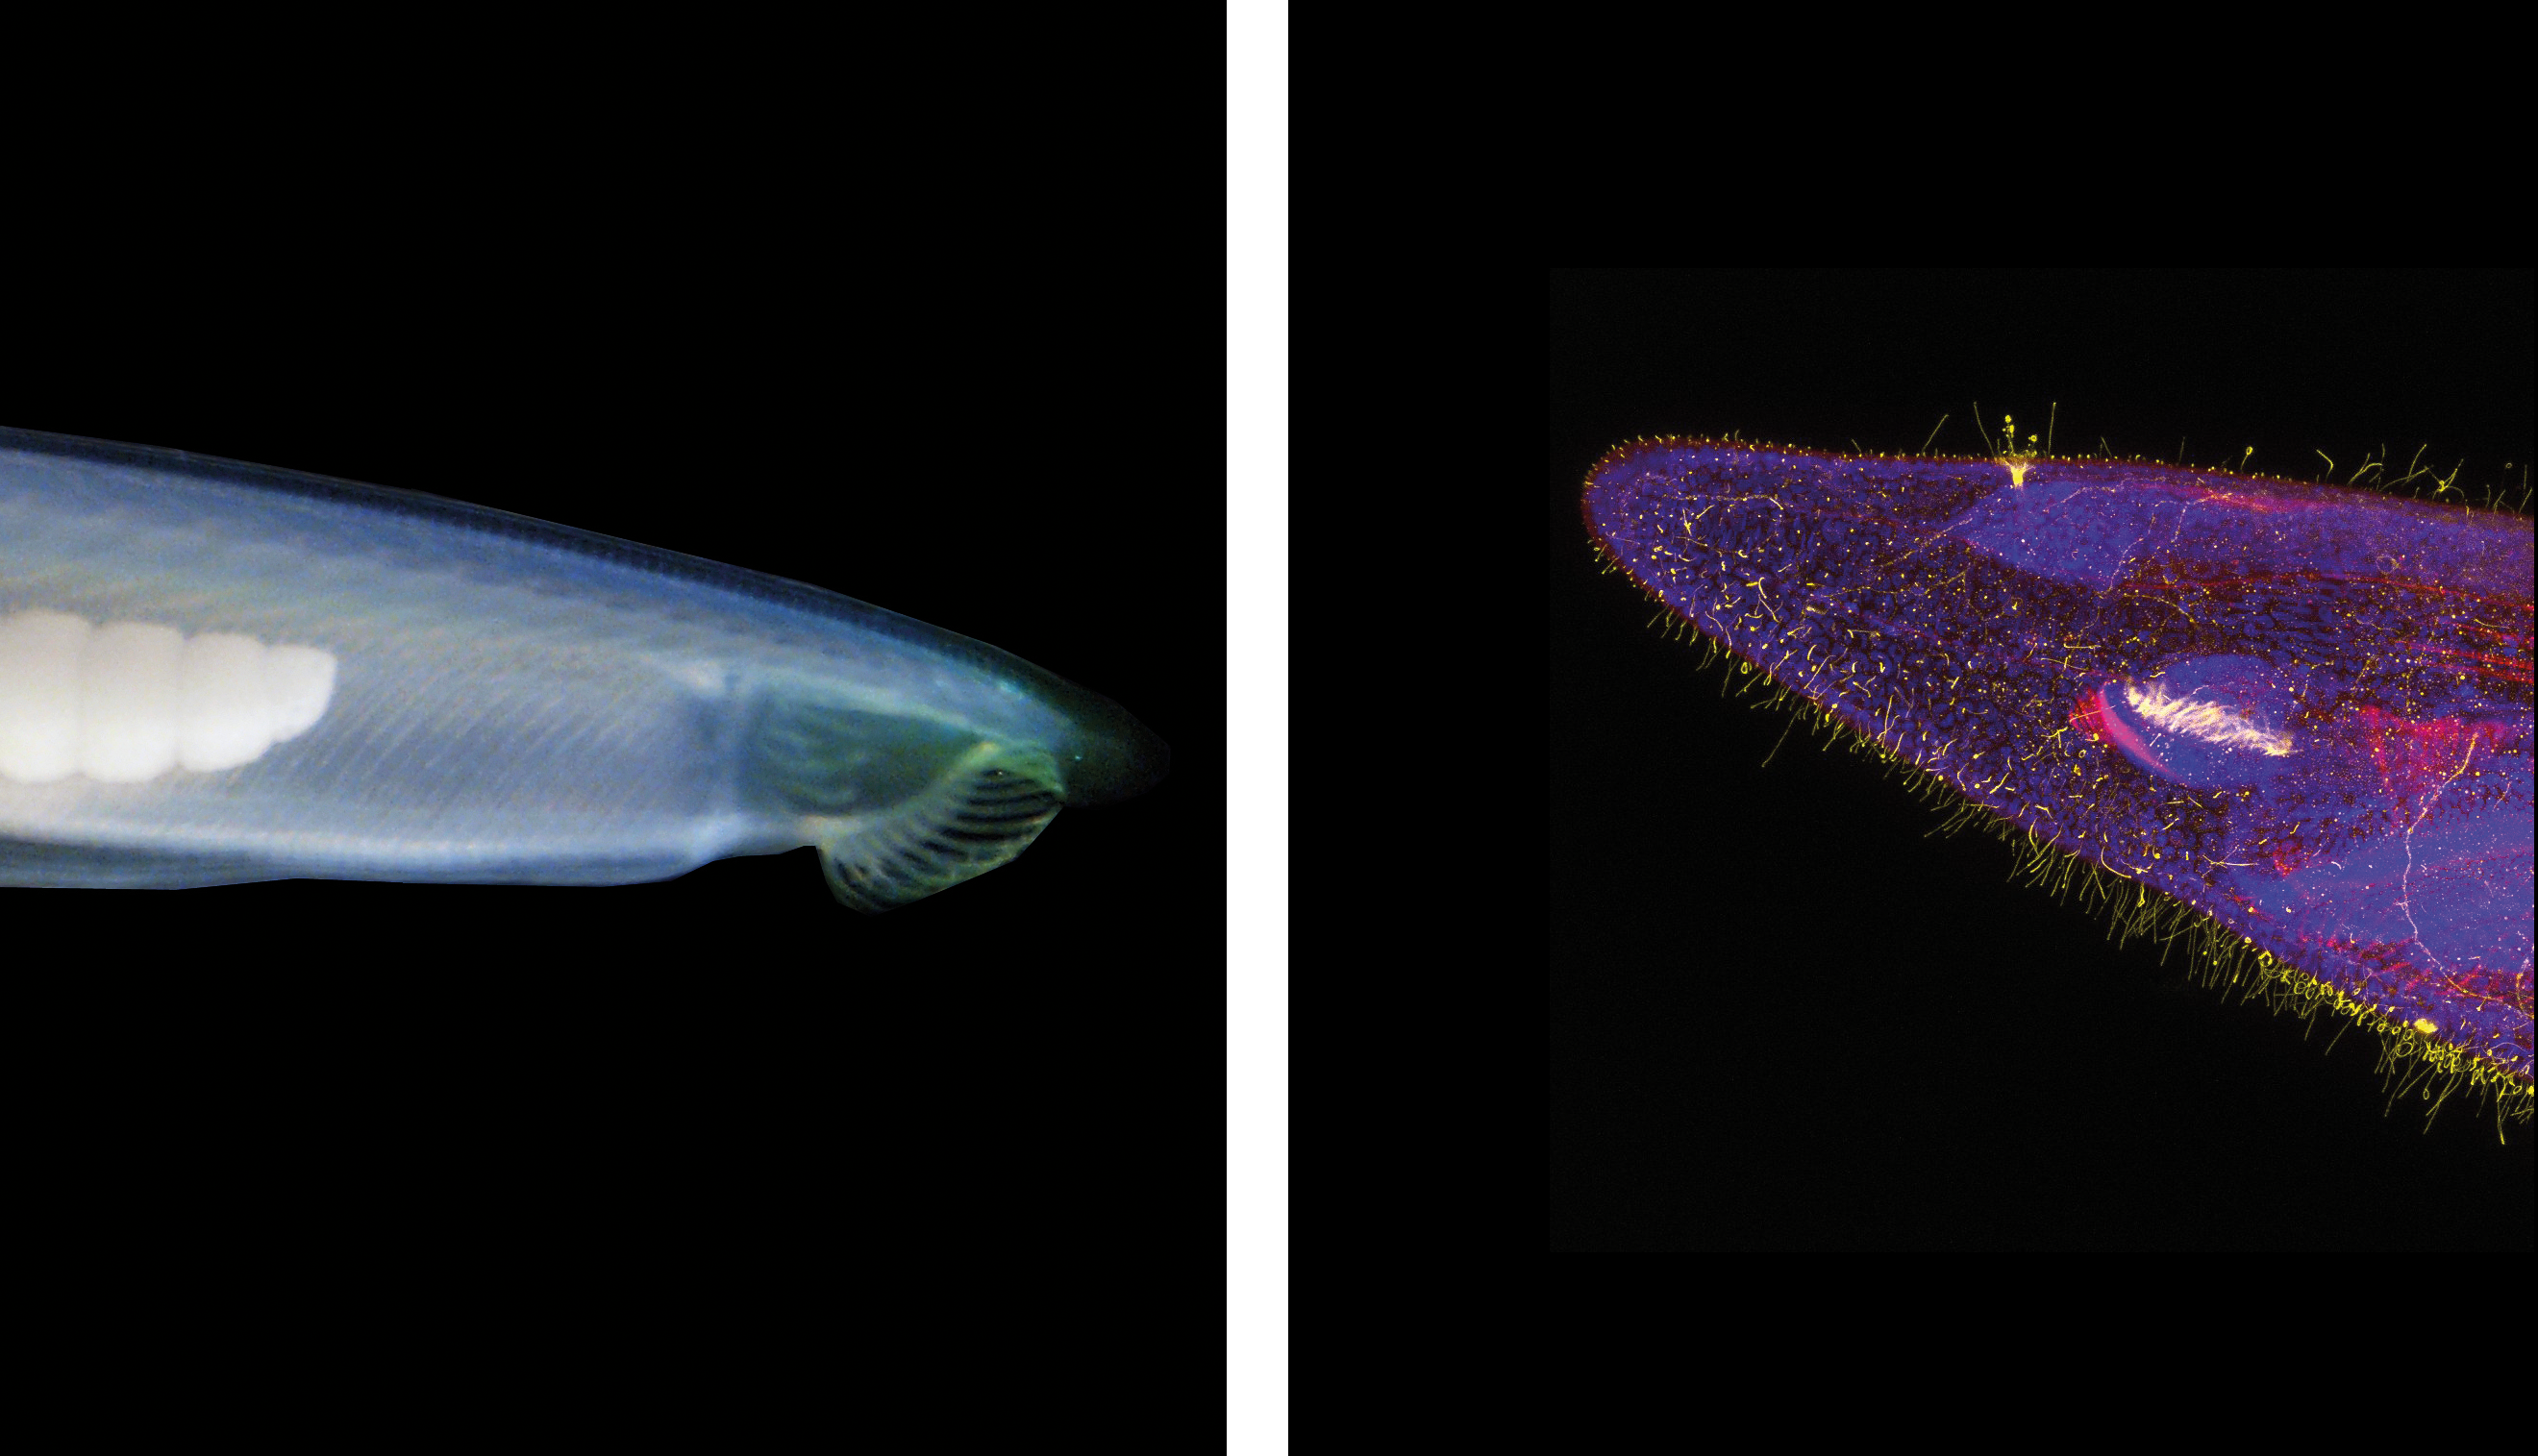 Amphioxus Branchiostoma lanceolatum observé dans son environnement naturel (à gauche) et au microscope confocal (à droite). Dépourvu de squelette et de tête, ce petit animal marin du sous-embranchement des céphalochordés est anatomiquement proche des vertébrés. Il est utilisé pour élucider les mécanismes de développement embryonnaire et leur évolution. © L. Subinara / BIOM